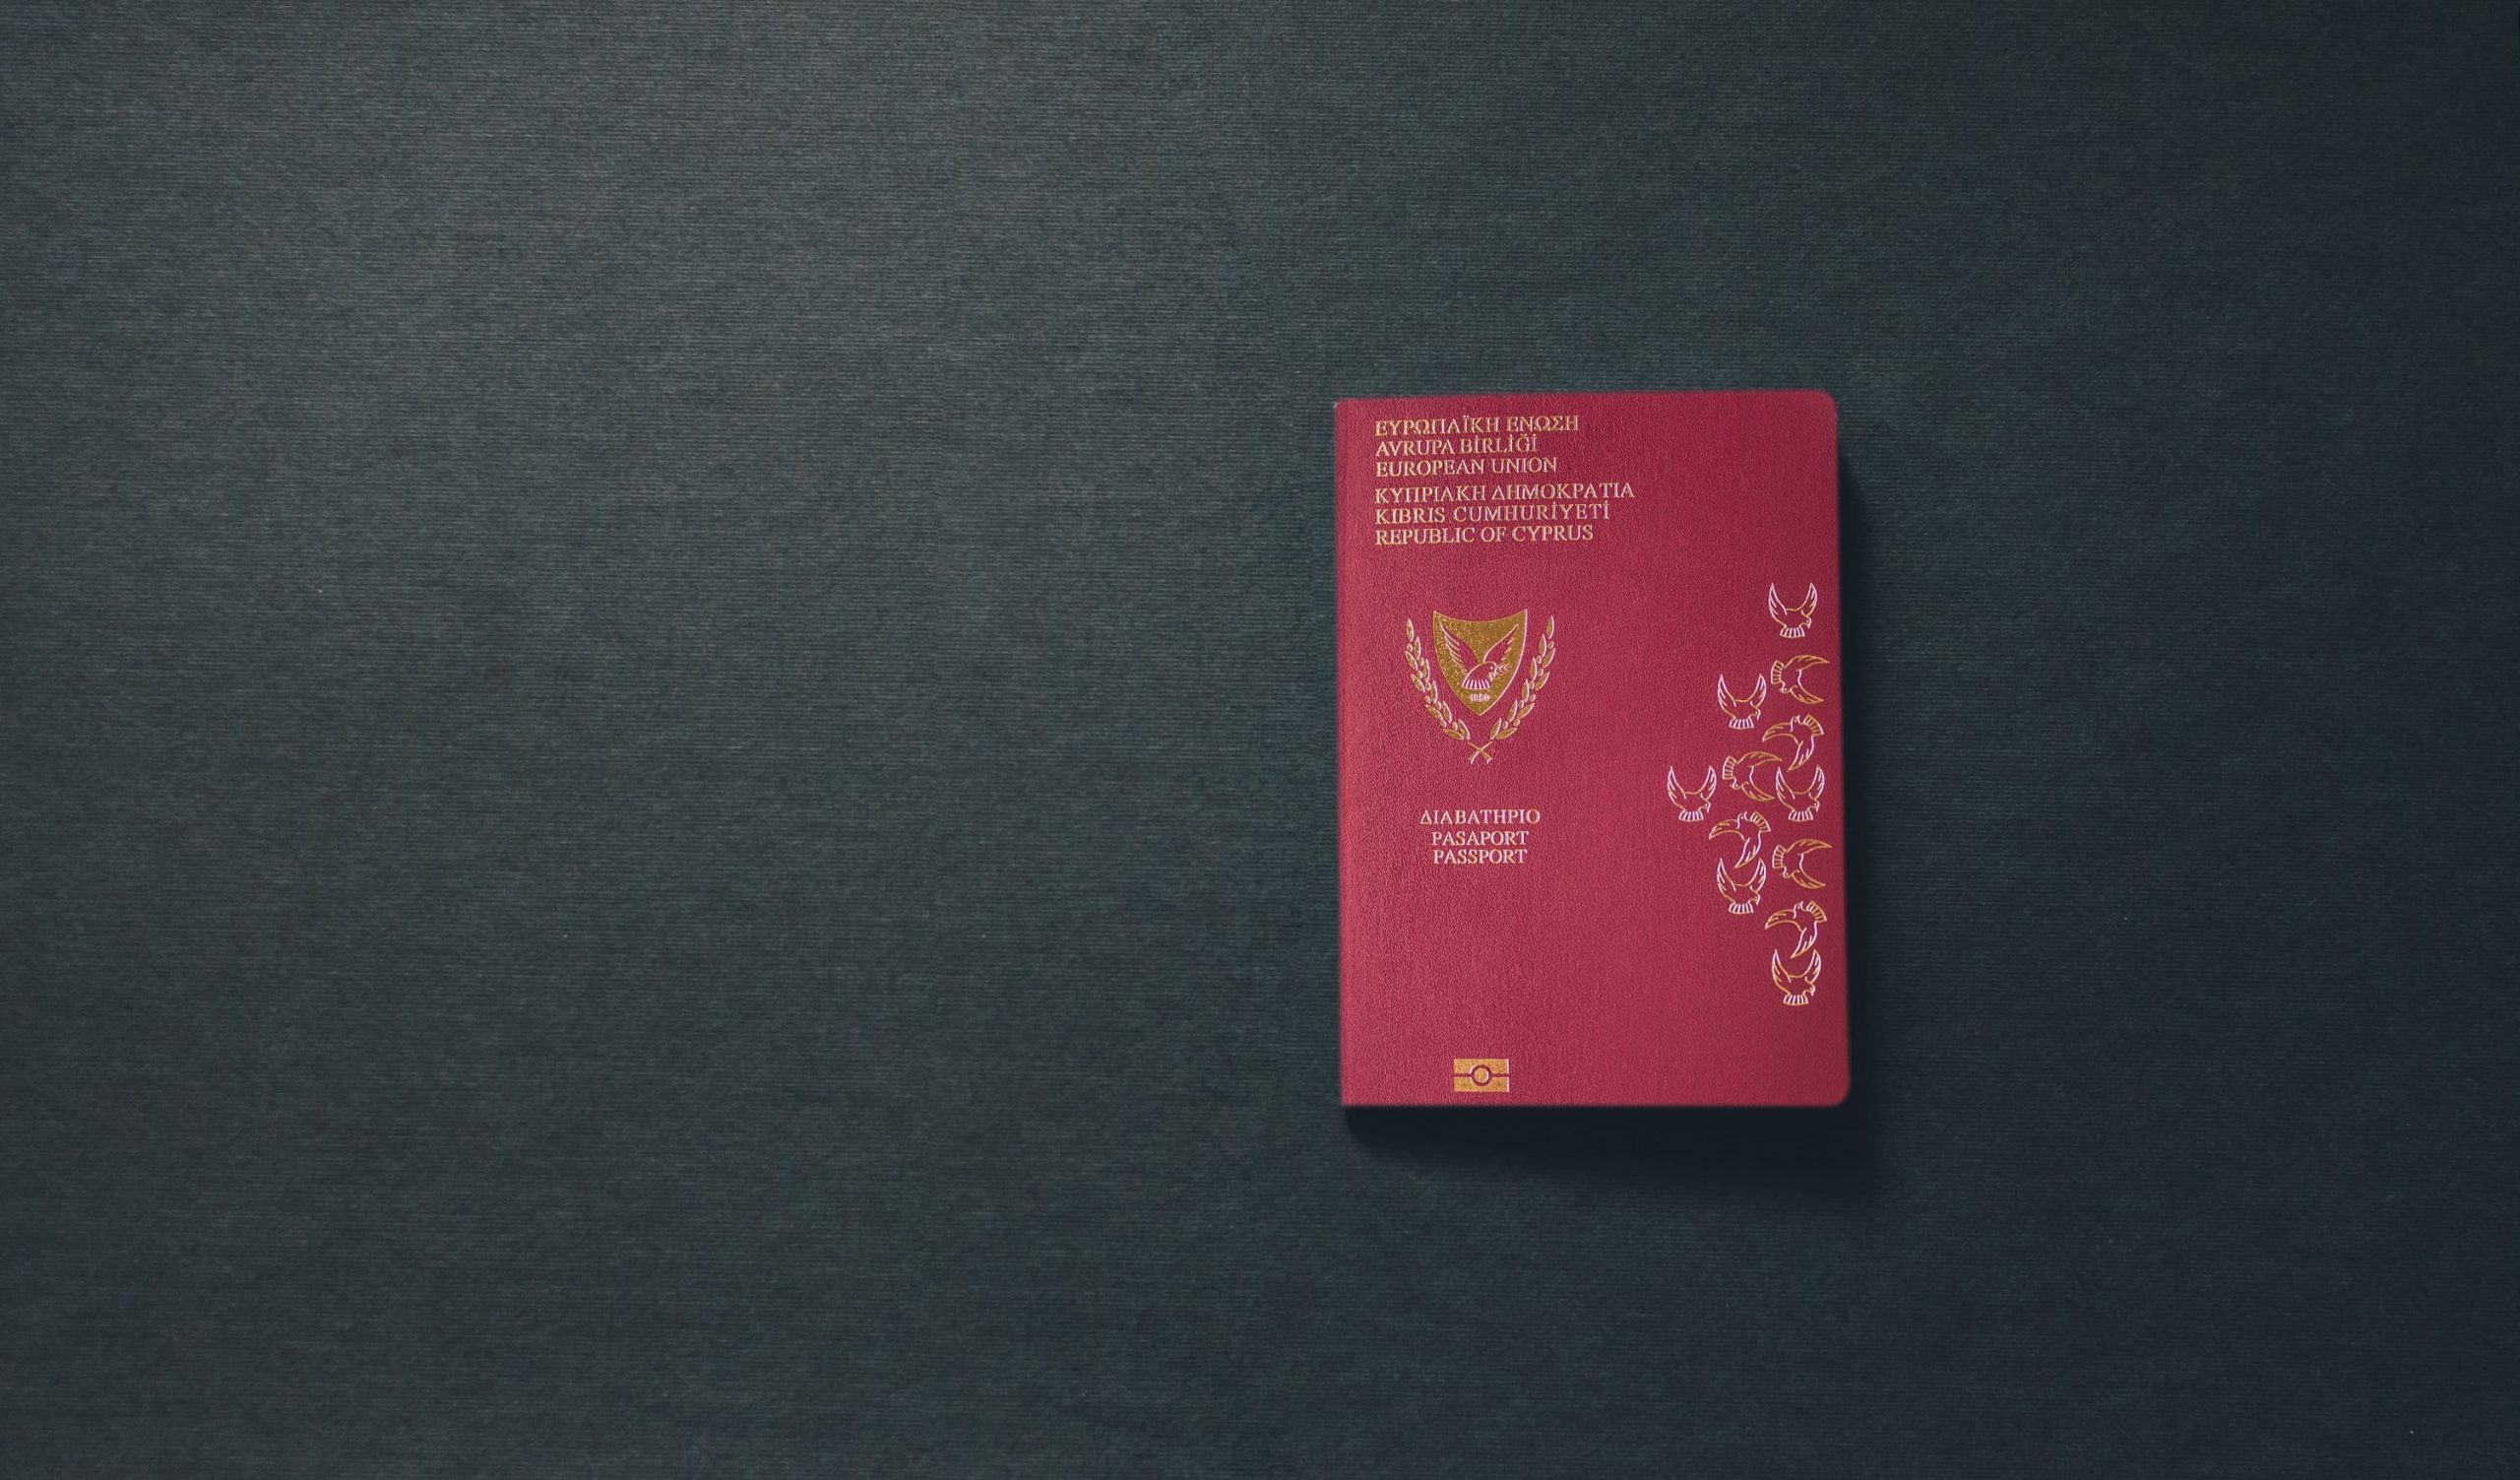 Получение гражданства кипра для россиян в 2021 году — изменения и нюансы